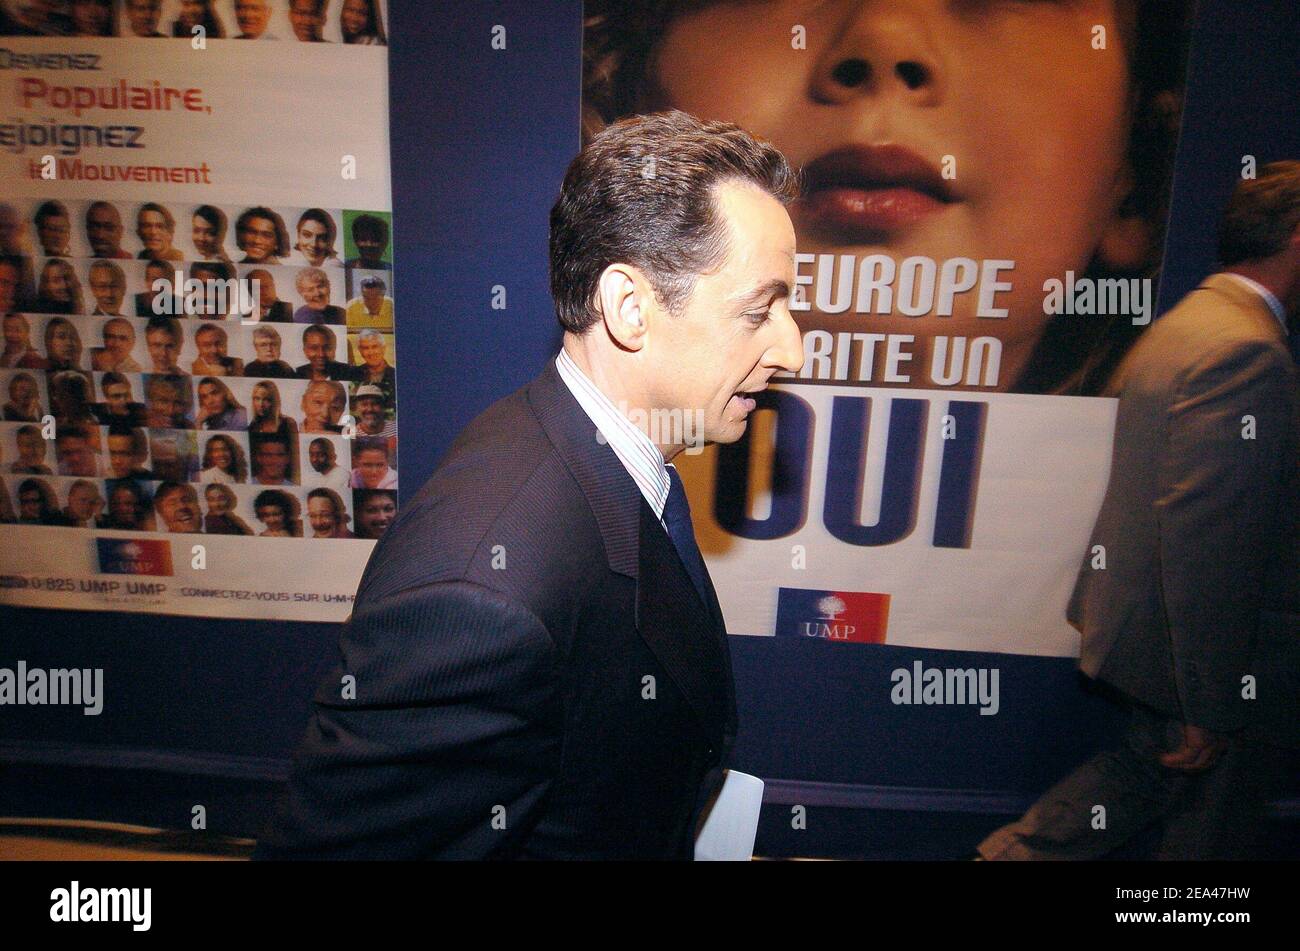 'Nicolas Sarkozy, dirigeant de l'Union pour un parti de mouvement populaire (UMP) au pouvoir arrive au siège du parti à Paris le dimanche 29 mai 2005, après que les premiers résultats ont montré que la France a voté ''non'' dans un référendum sur la première constitution de l'Union européenne. Photo de Klein-Gouhier/ABACA.' Banque D'Images